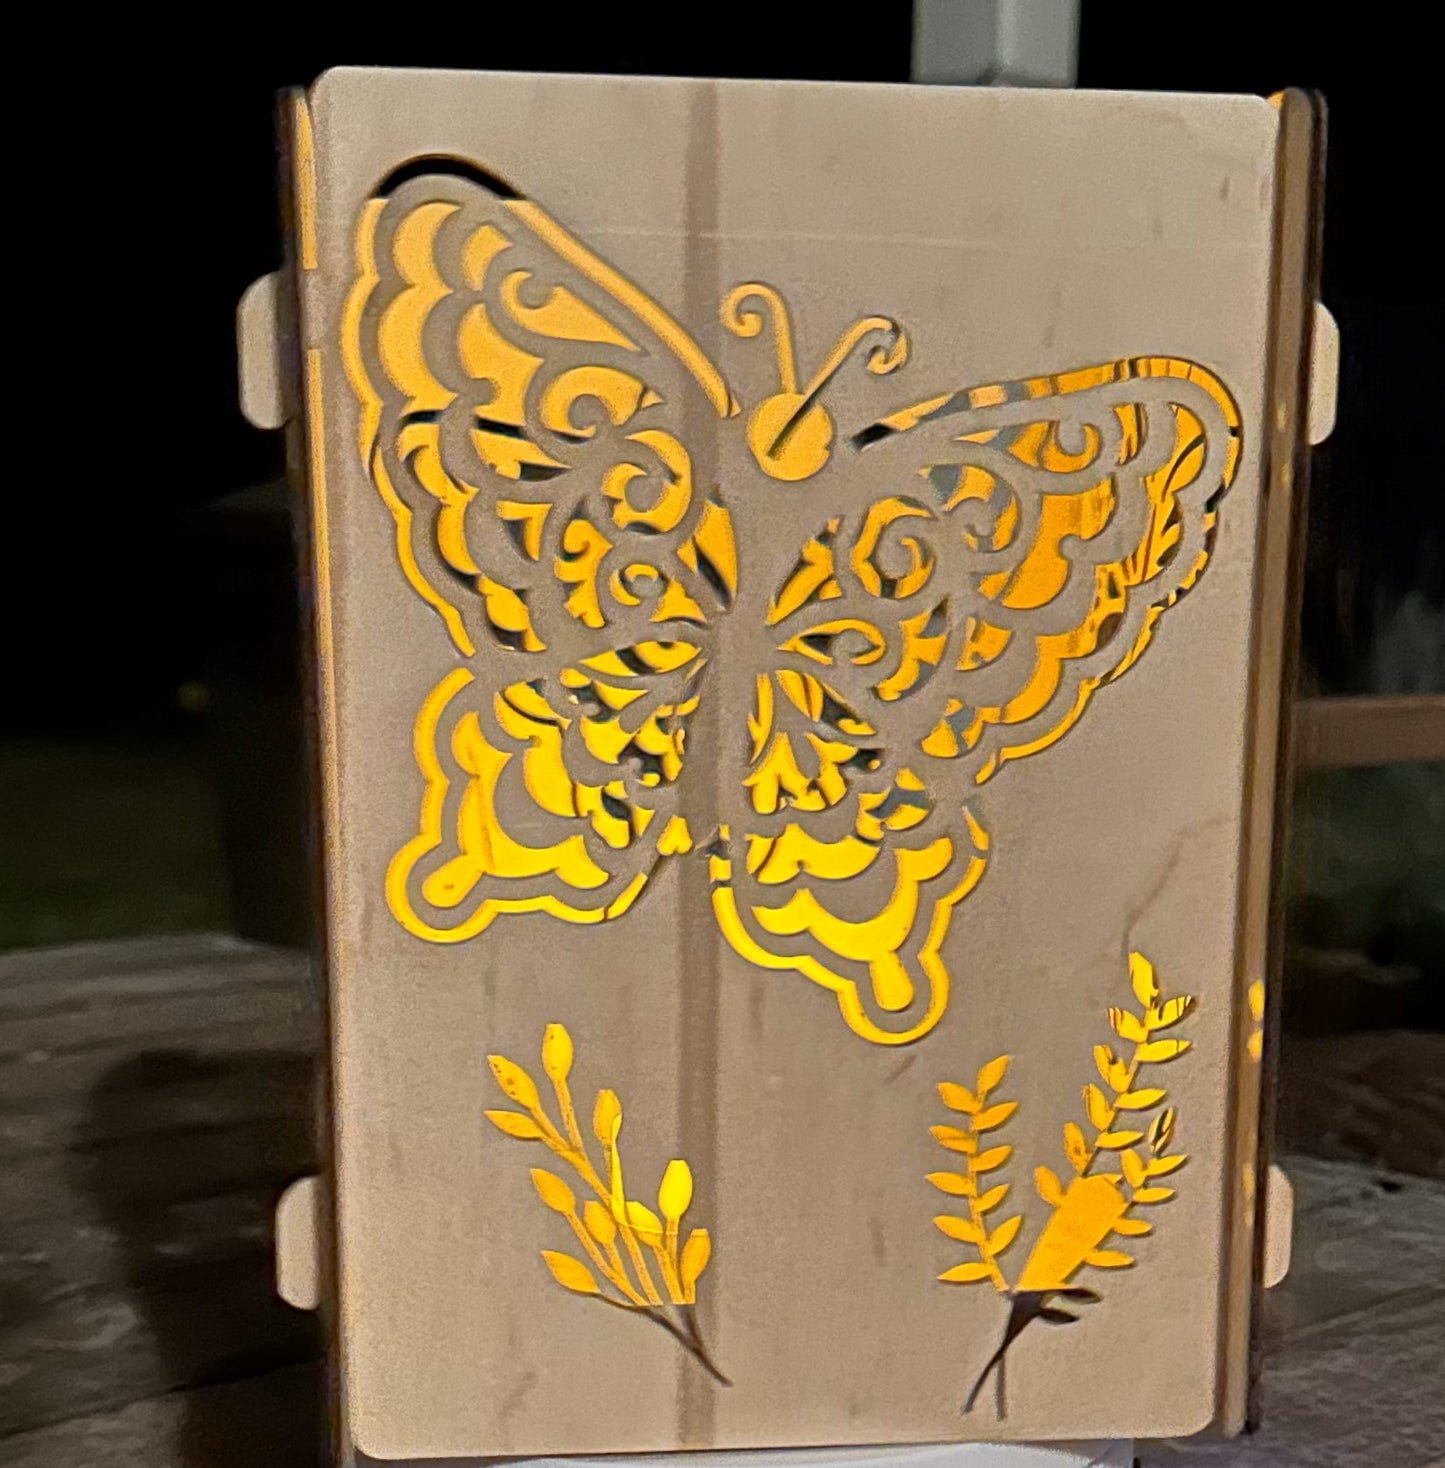 Butterfly Lantern